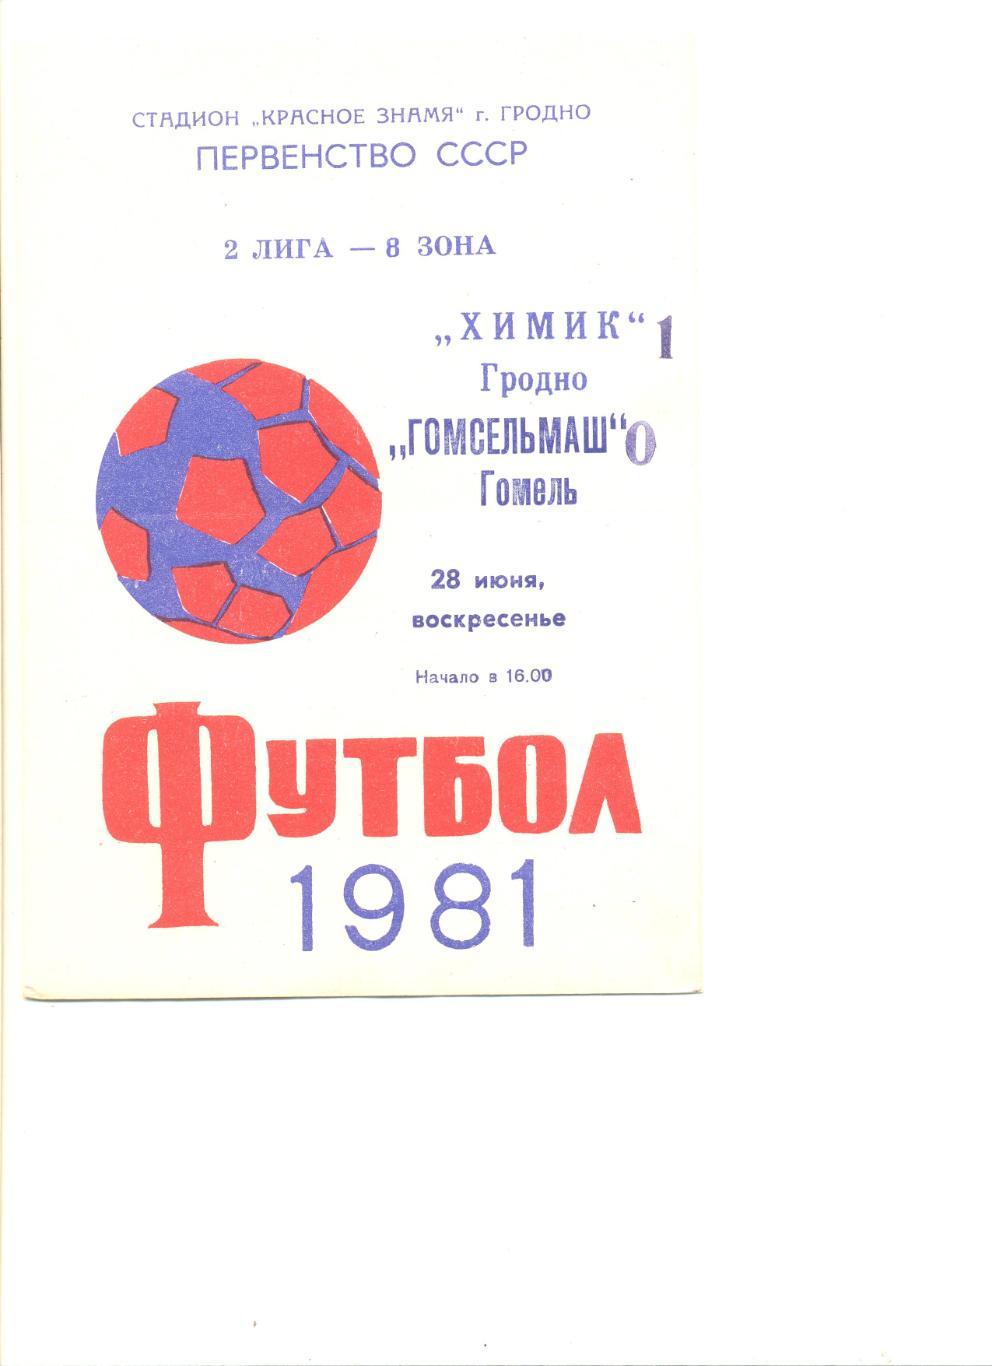 Химик Гродно - Гомсельмаш Гомель 28.06.1981 г.